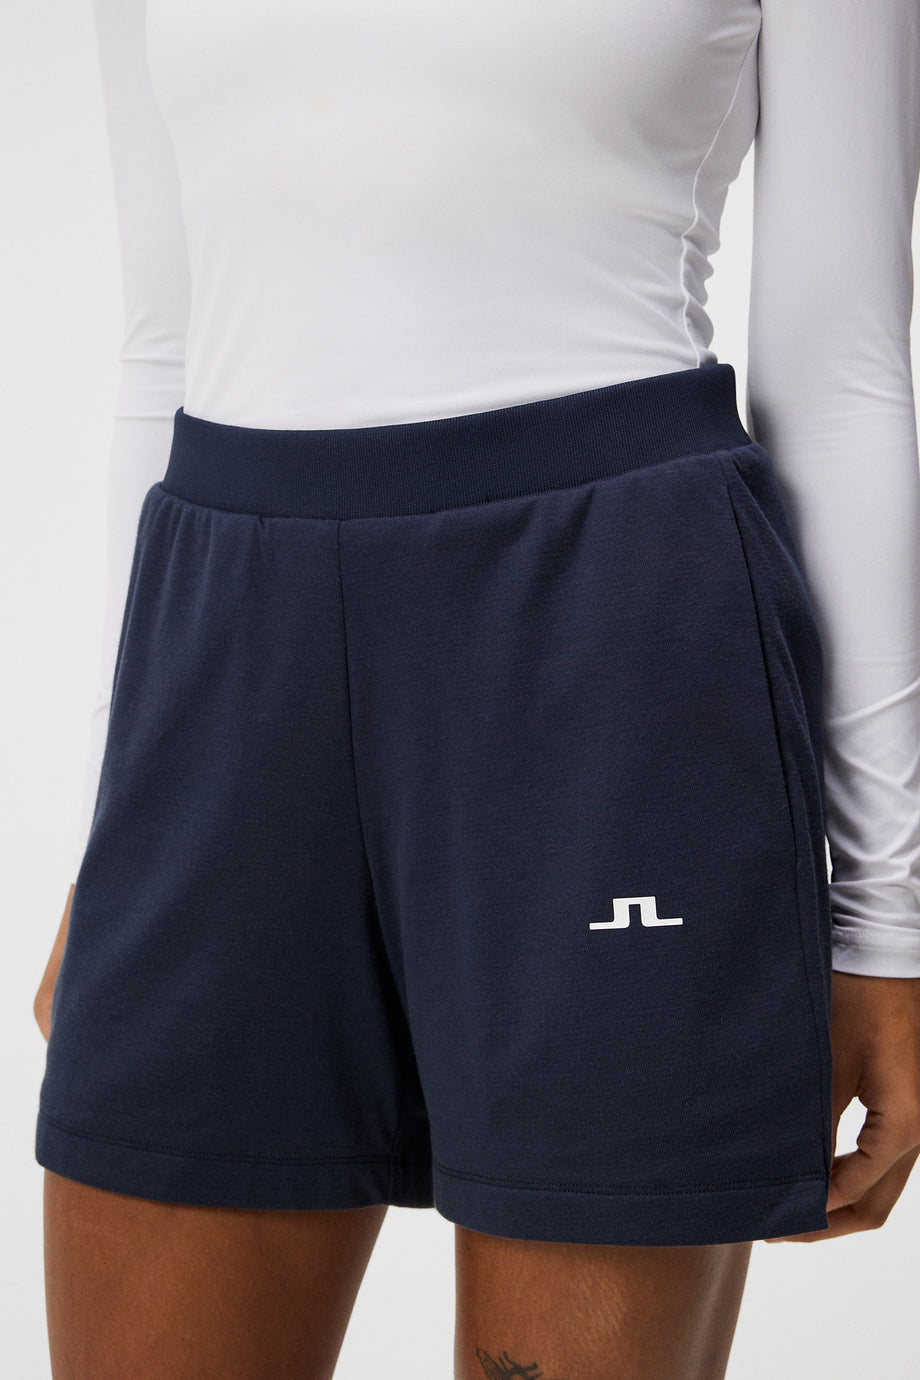 Vice Shorts / JL Navy